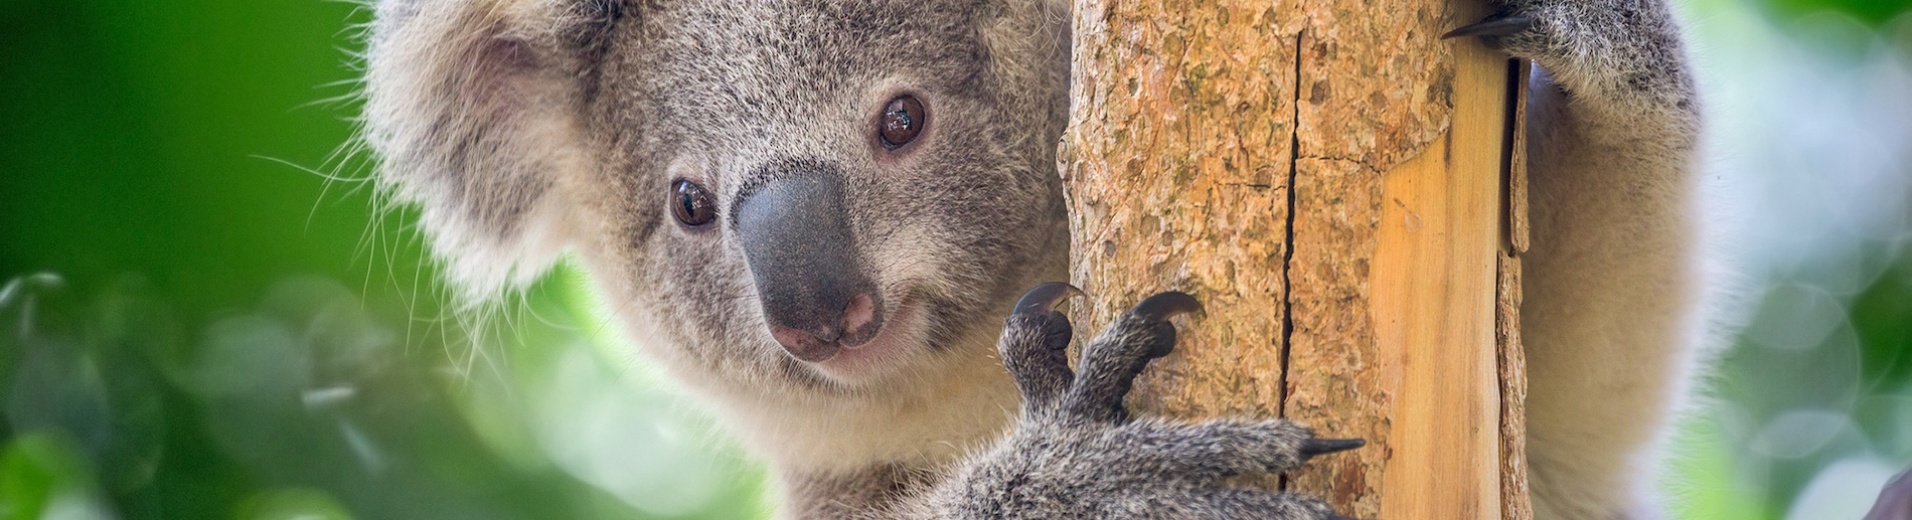 Koala dans un arbre Australie